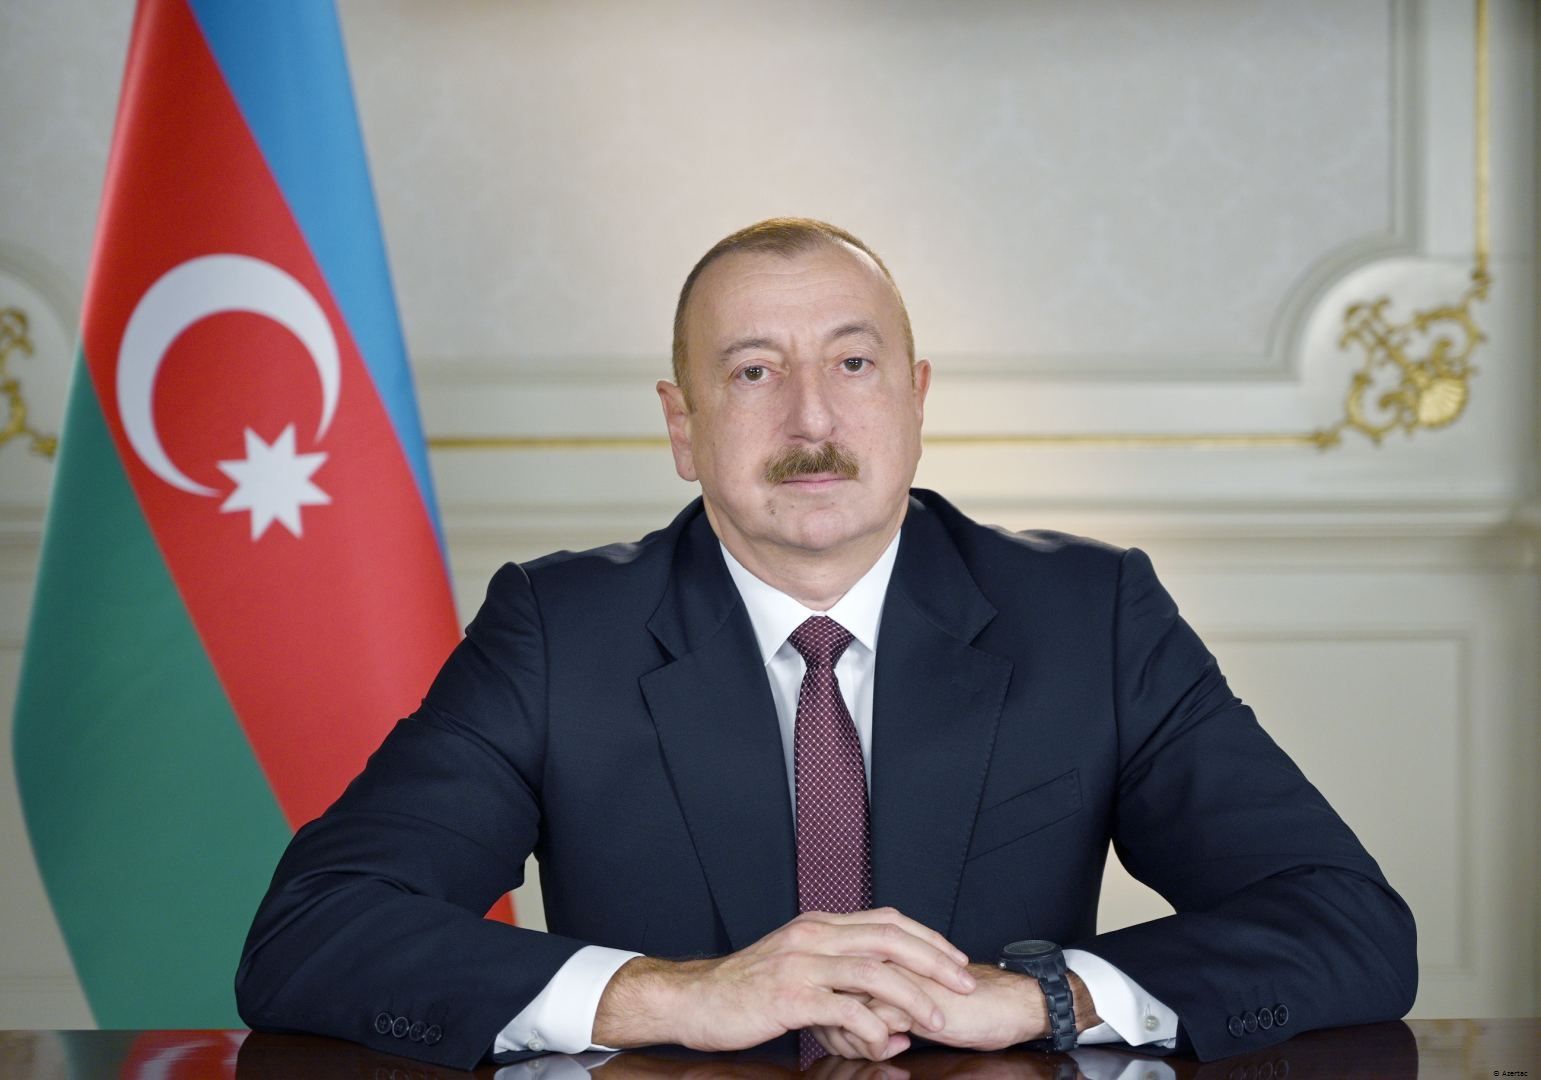 Le président Ilham Aliyev : La Déclaration de Choucha sur l’alliance porte les liens azerbaïdjano-turcs au plus haut niveau